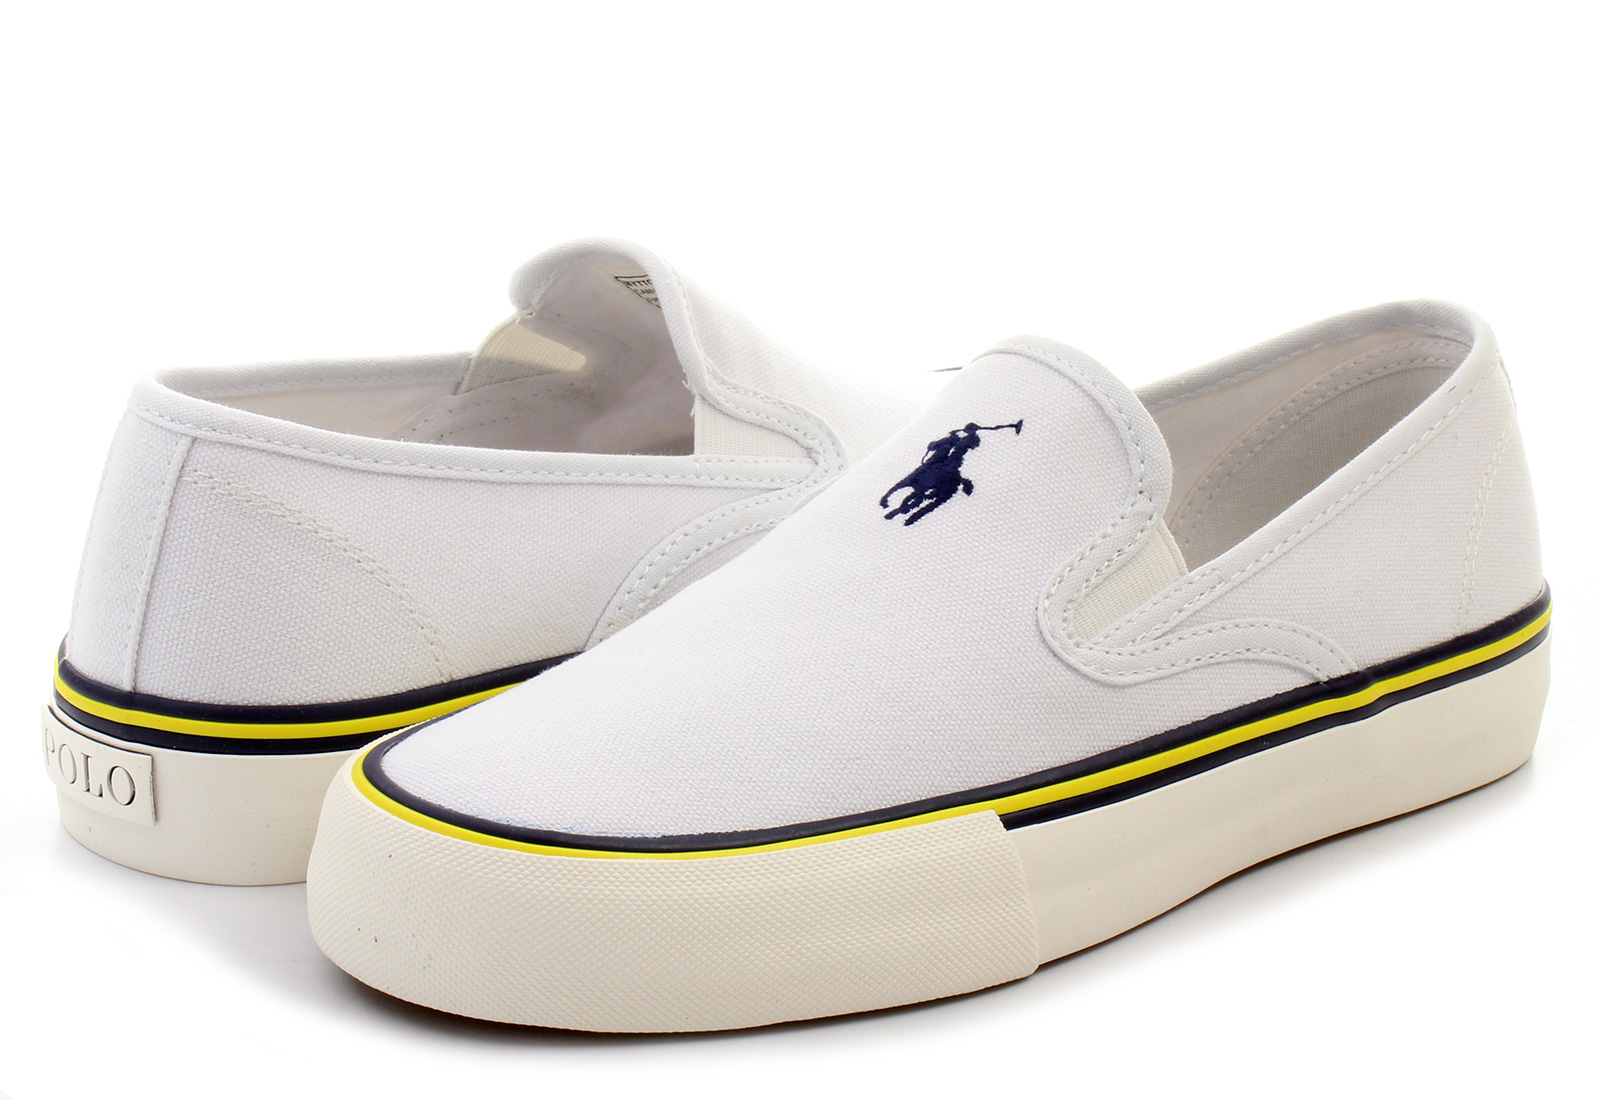 Polo Ralph Lauren Shoes - Mytton - 2107-C-A1557 - Online shop for ...